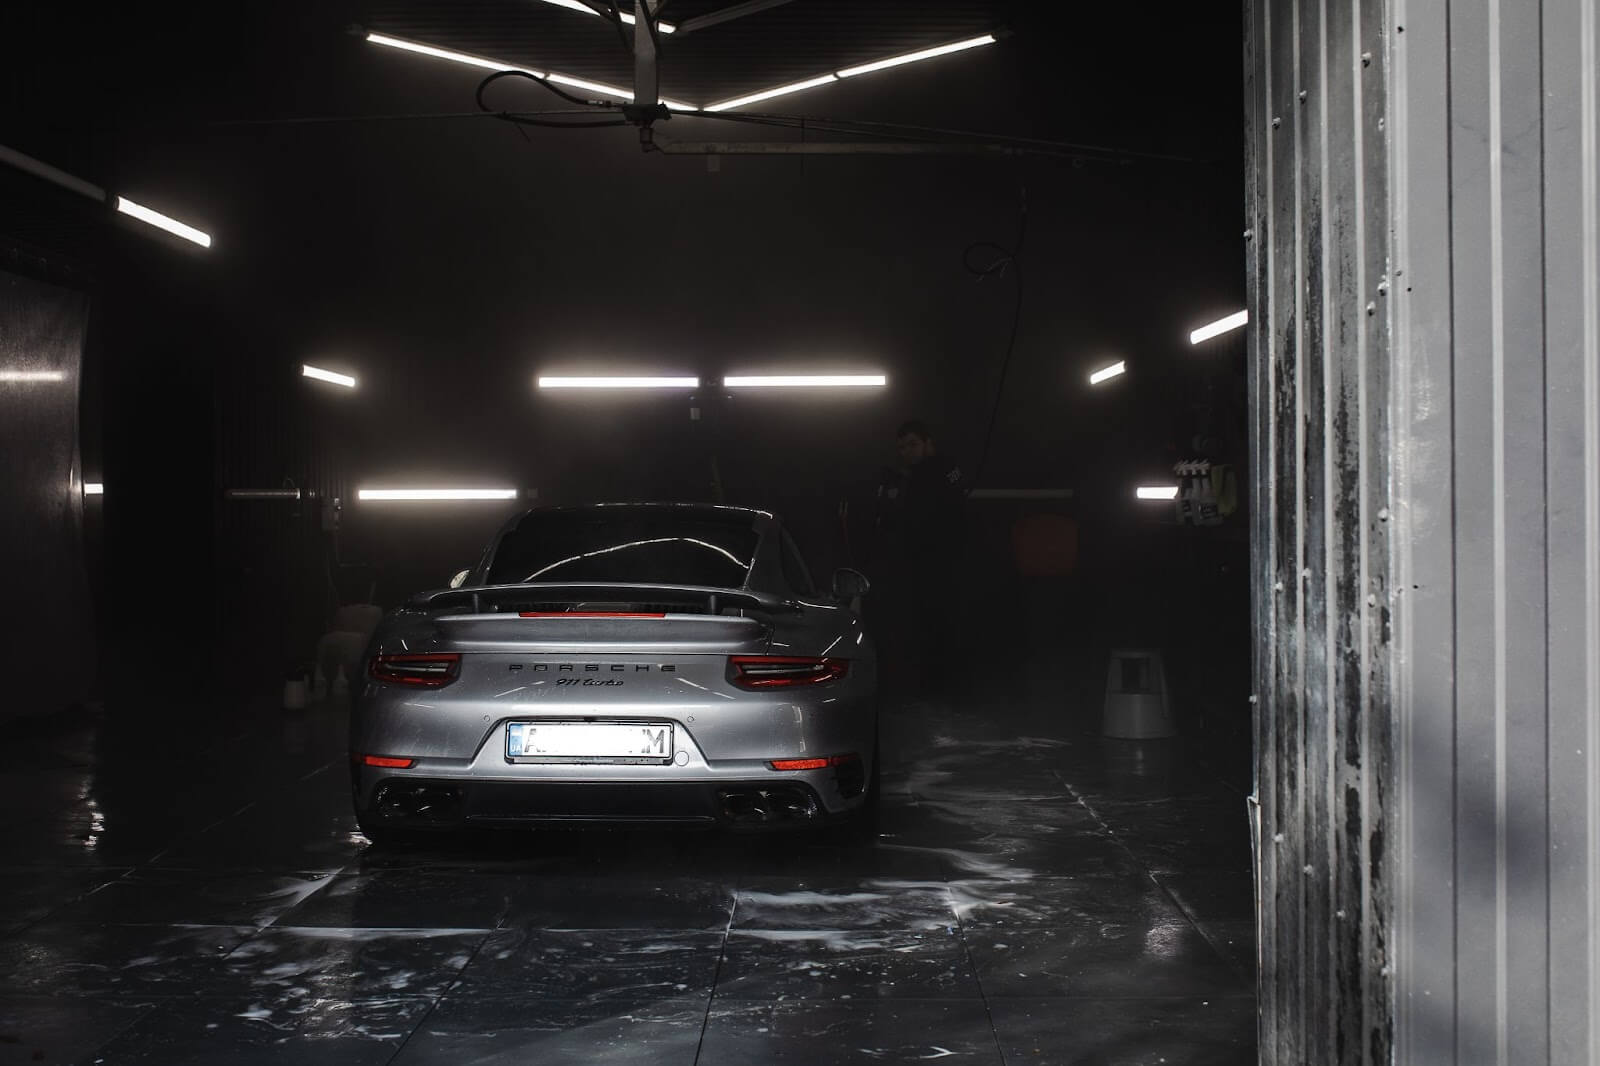 Porsche in a car wash bay